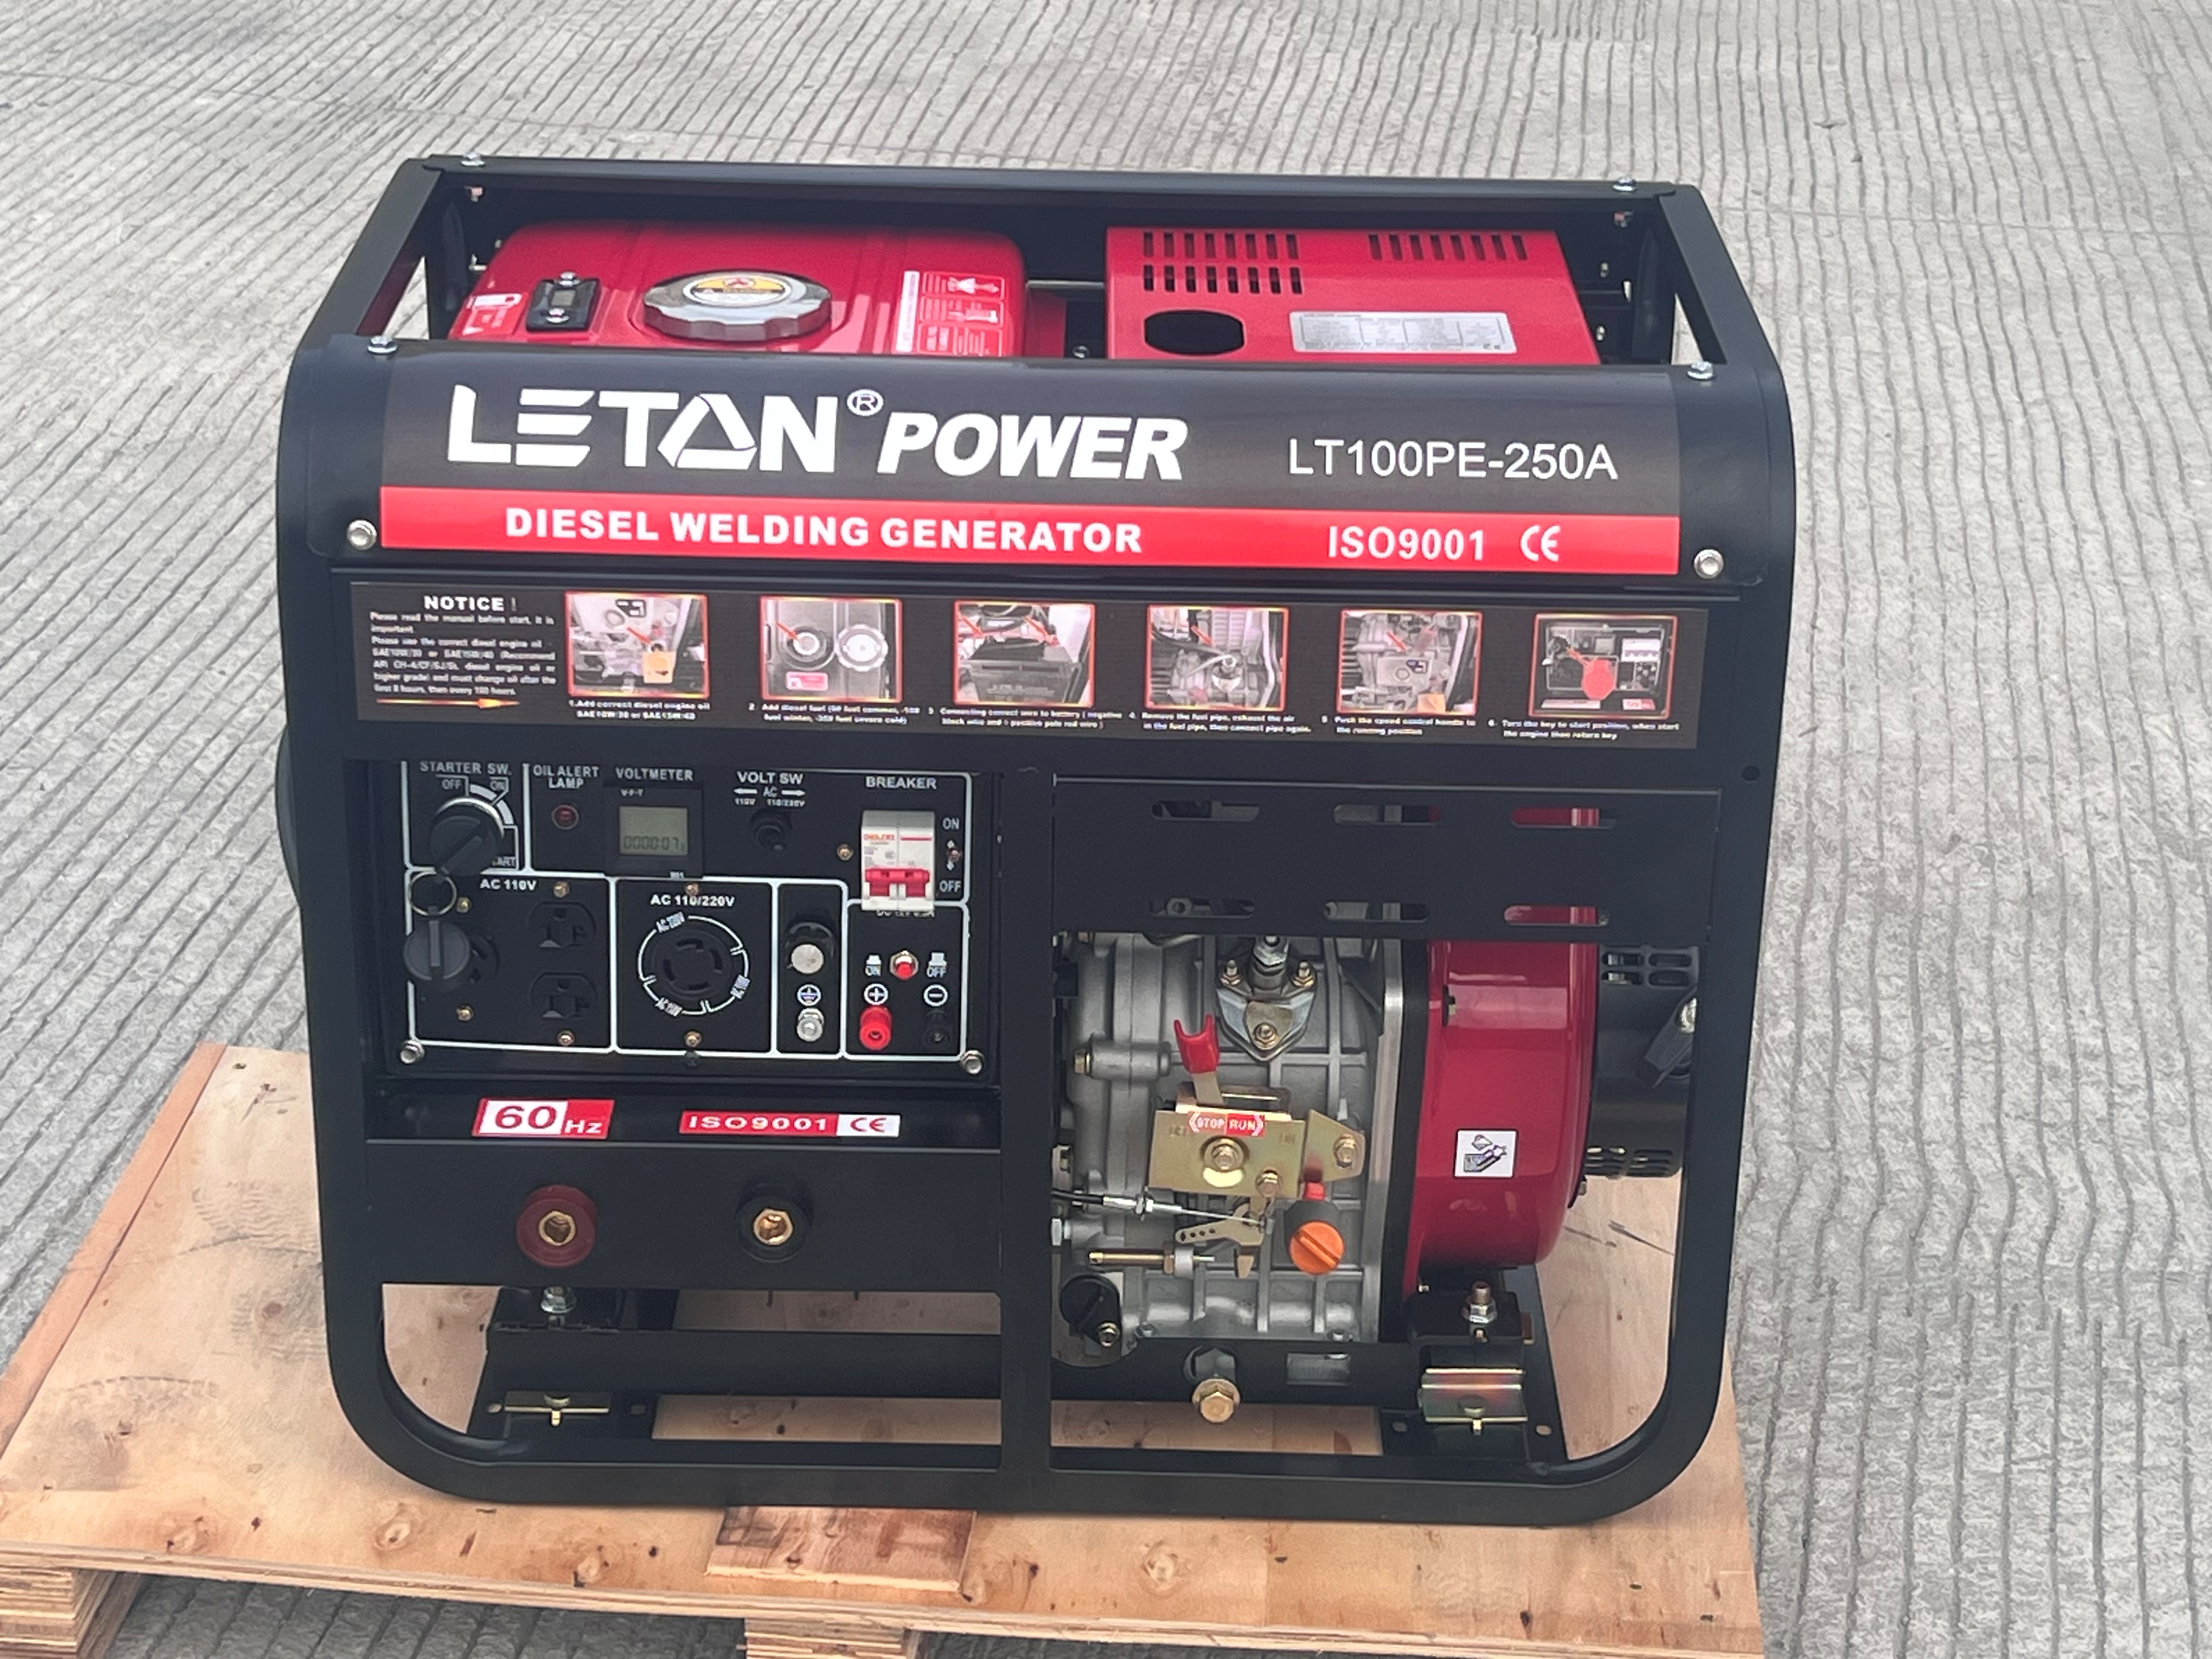 LETON POWER 250A varilni dizelski generator cena za generator odprtega tipa LT100PE-250A